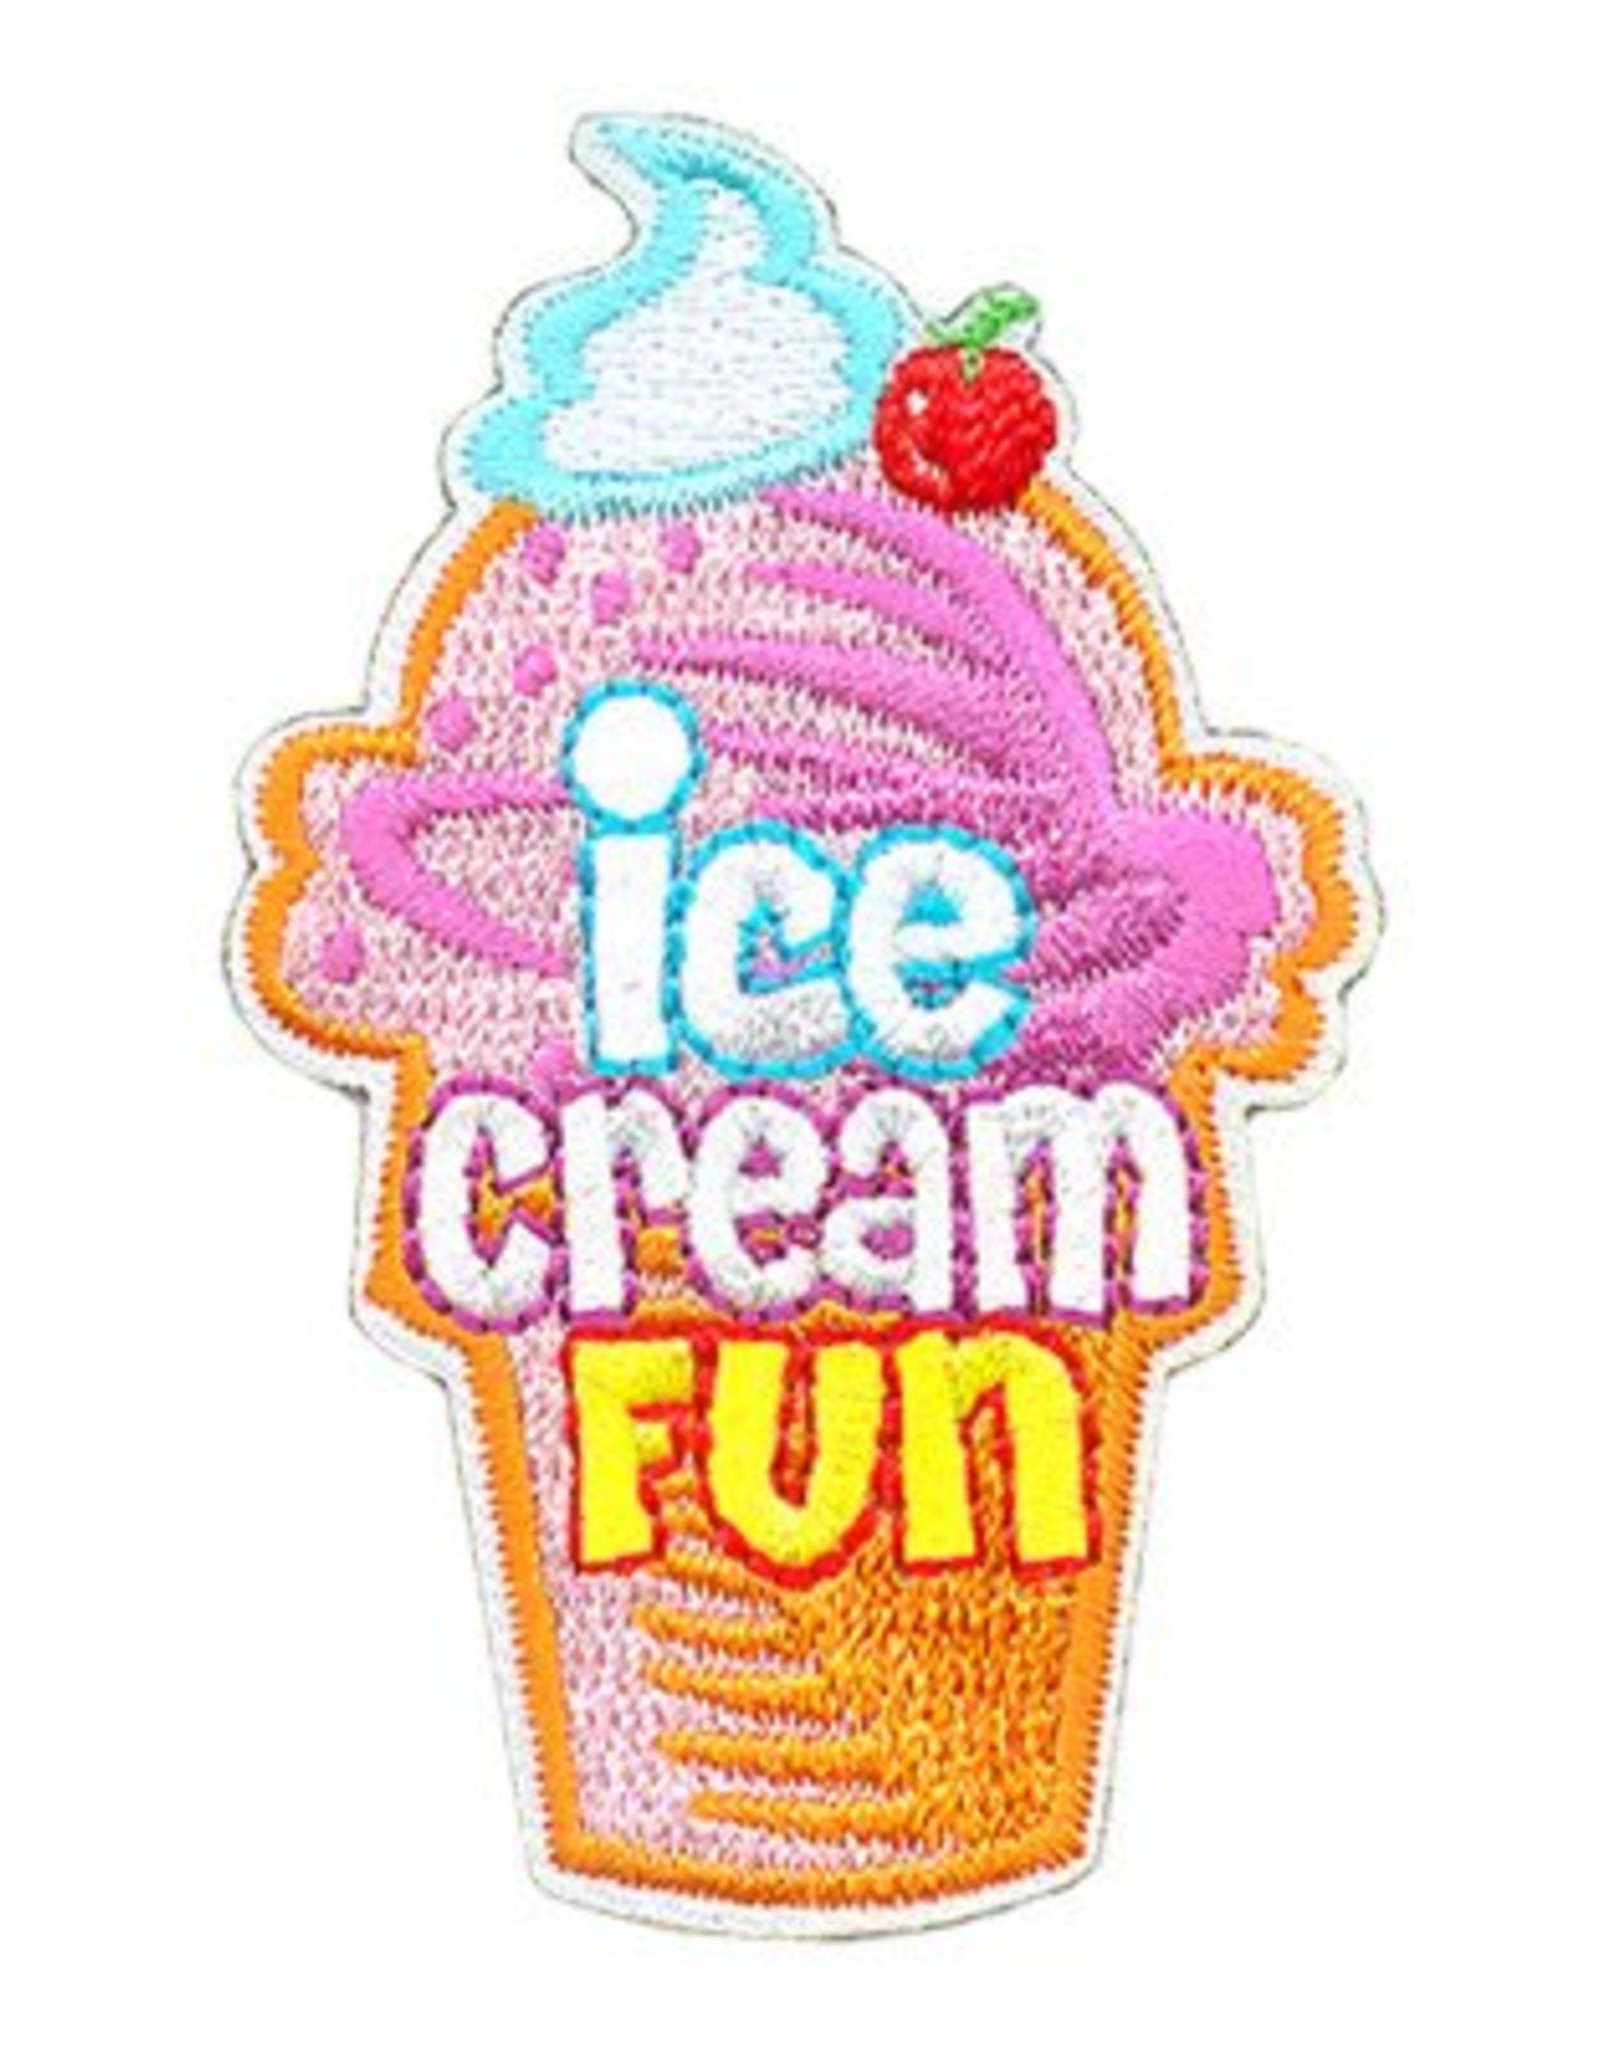 Advantage Emblem & Screen Prnt Ice Cream Fun Cone Fun Patch